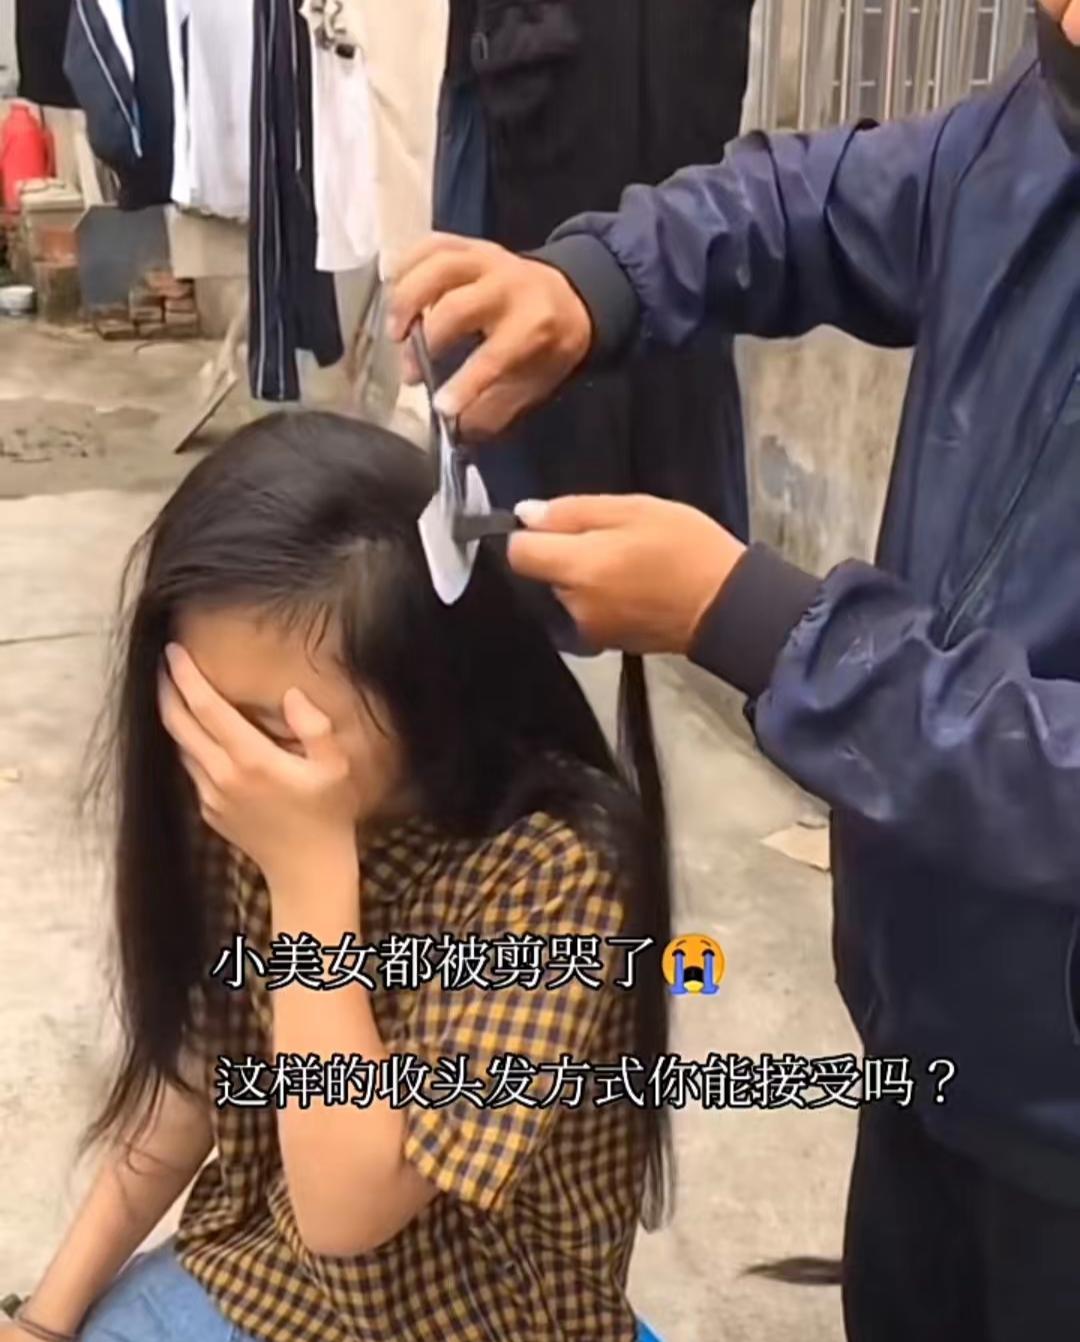 Trung Quốc có thành phố mệnh danh 'thánh địa của tóc giả' - nơi những cô gái nông thôn bán tóc thành thông lệ - Ảnh 1.